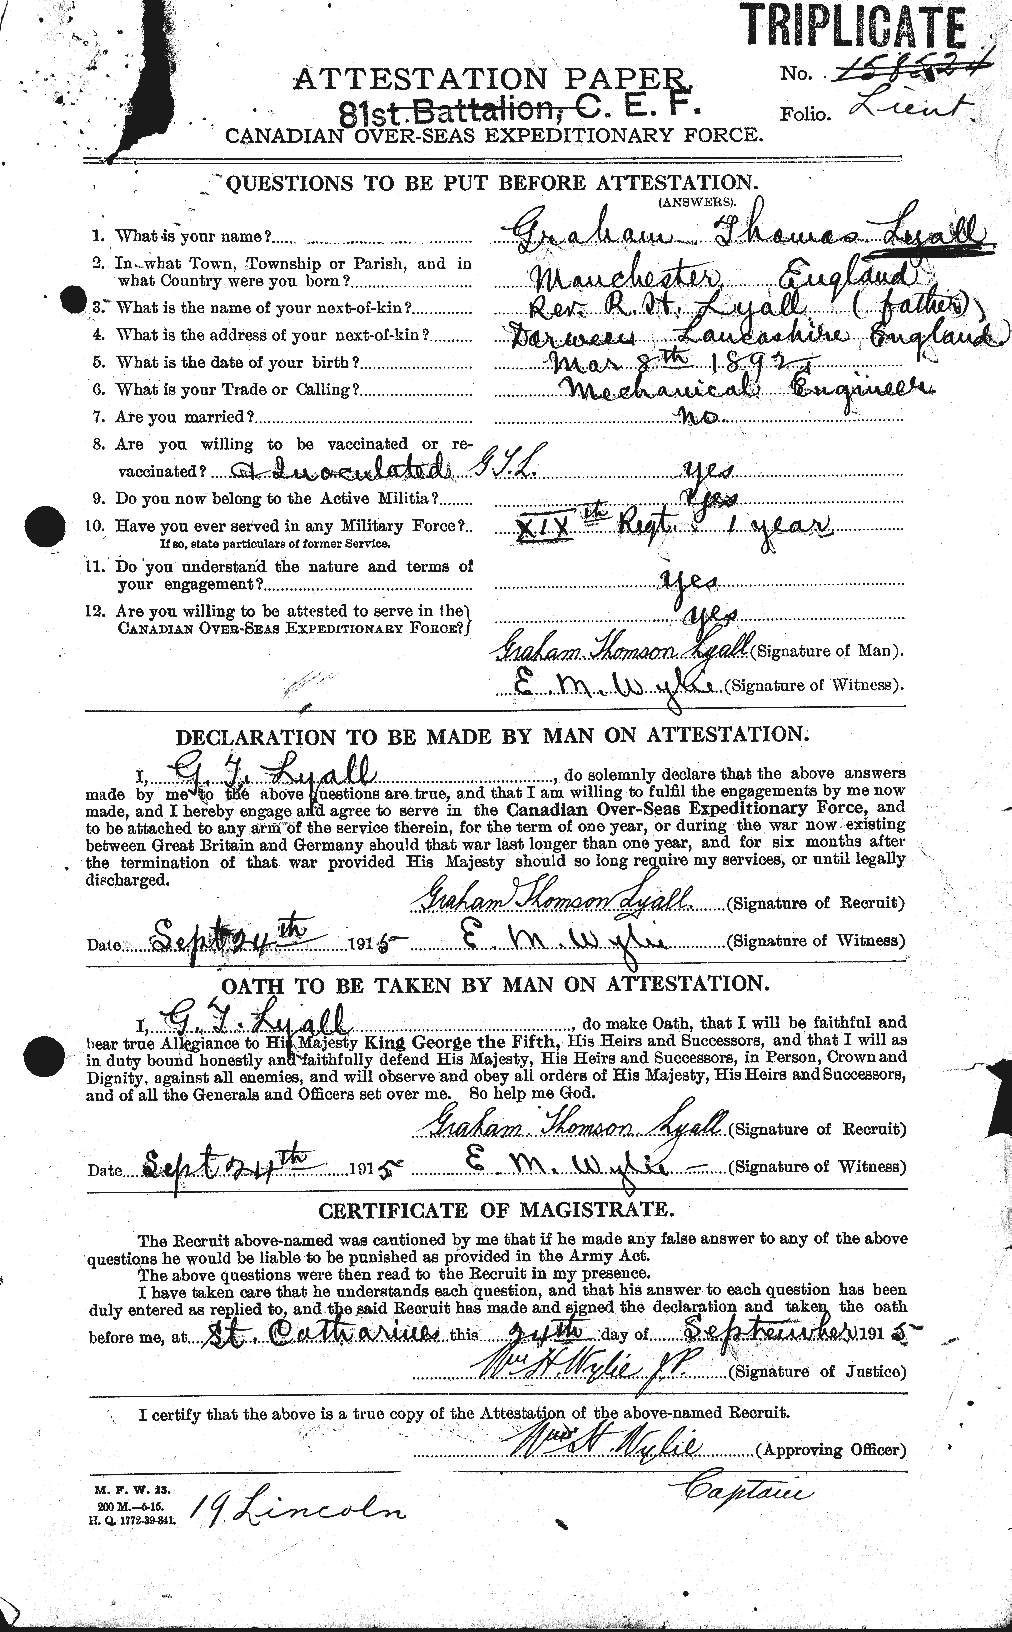 Dossiers du Personnel de la Première Guerre mondiale - CEC 471663a